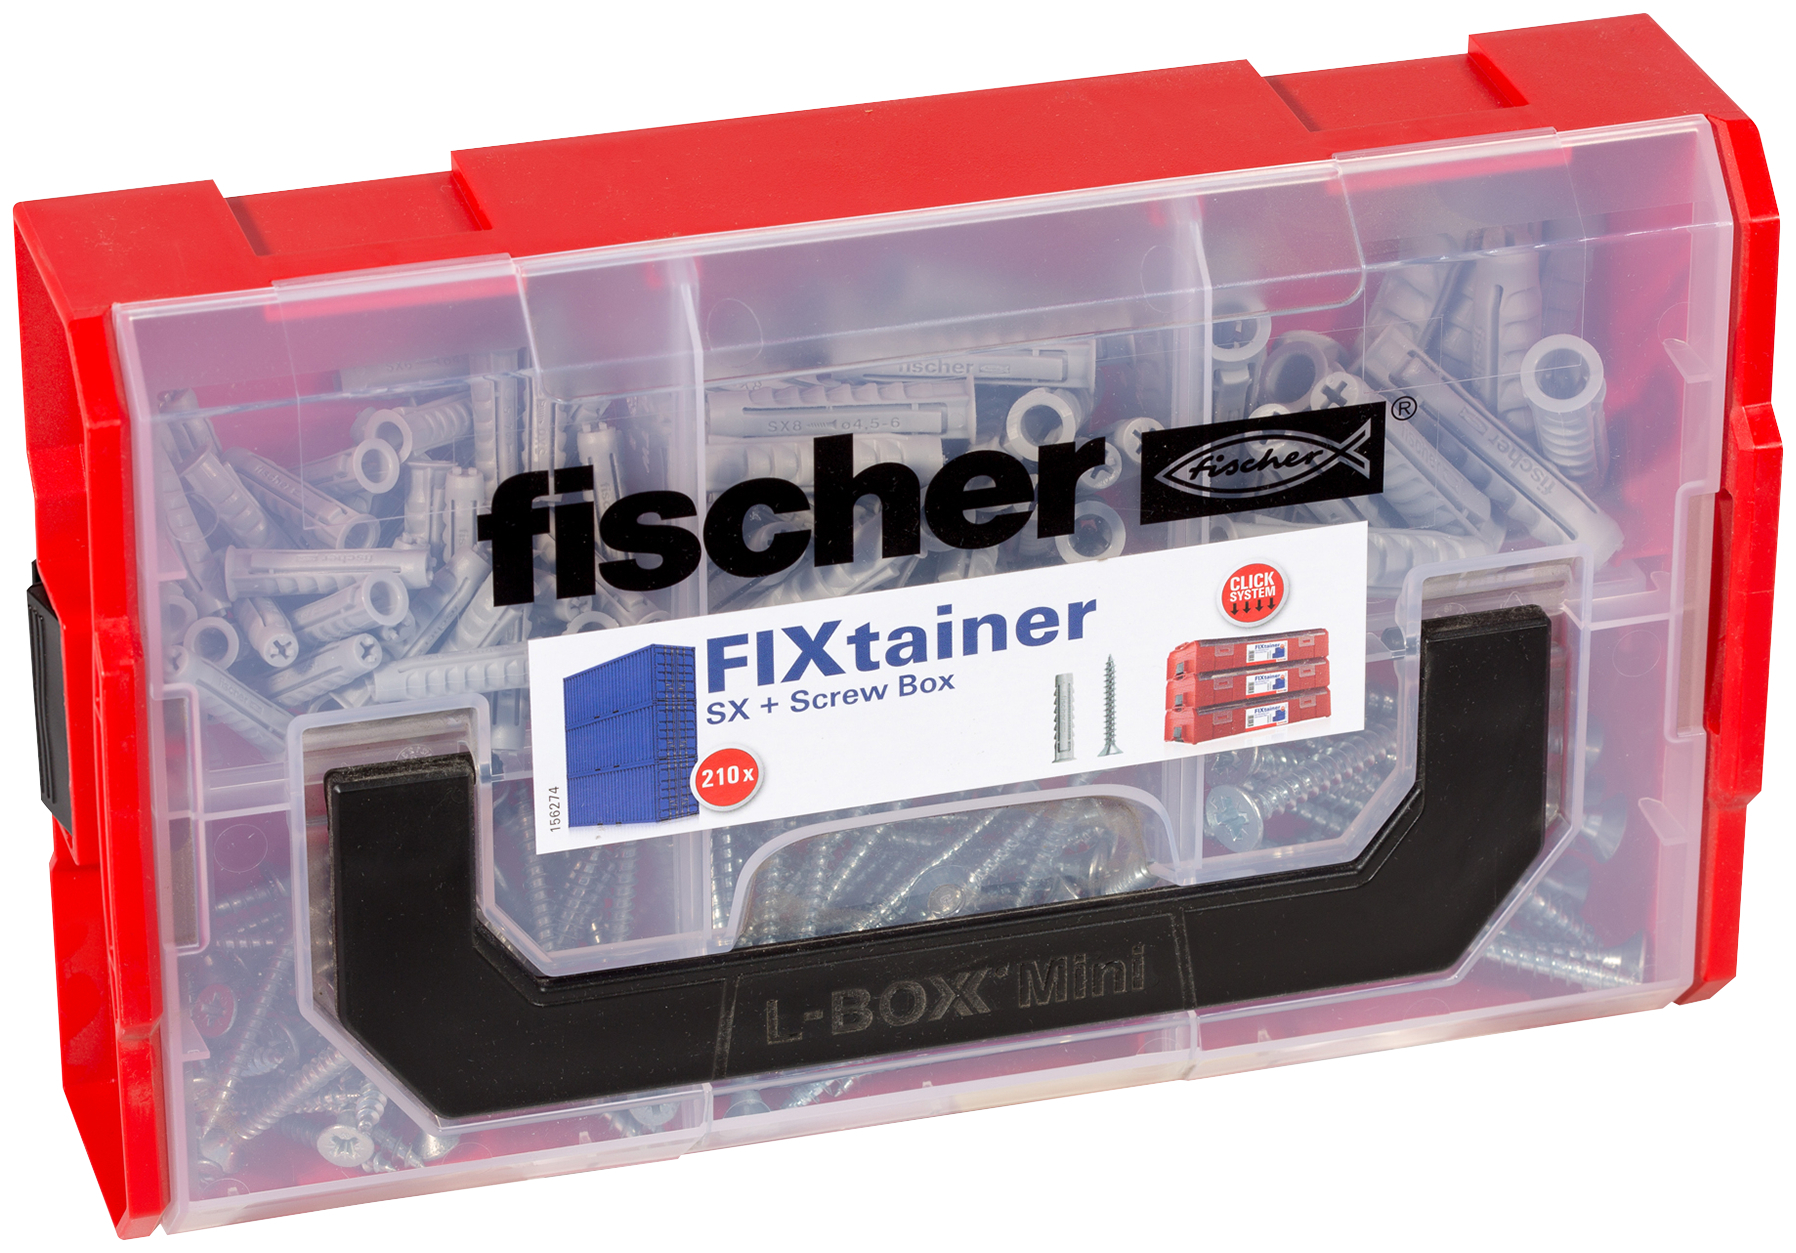 fischer FIXtainer SX con vite Valigetta tasselli (105 Pz.) Pratiche soluzioni di fissaggio per le pi comuni applicazioni nel fischer FixTainer impilabile e di alta qualit.